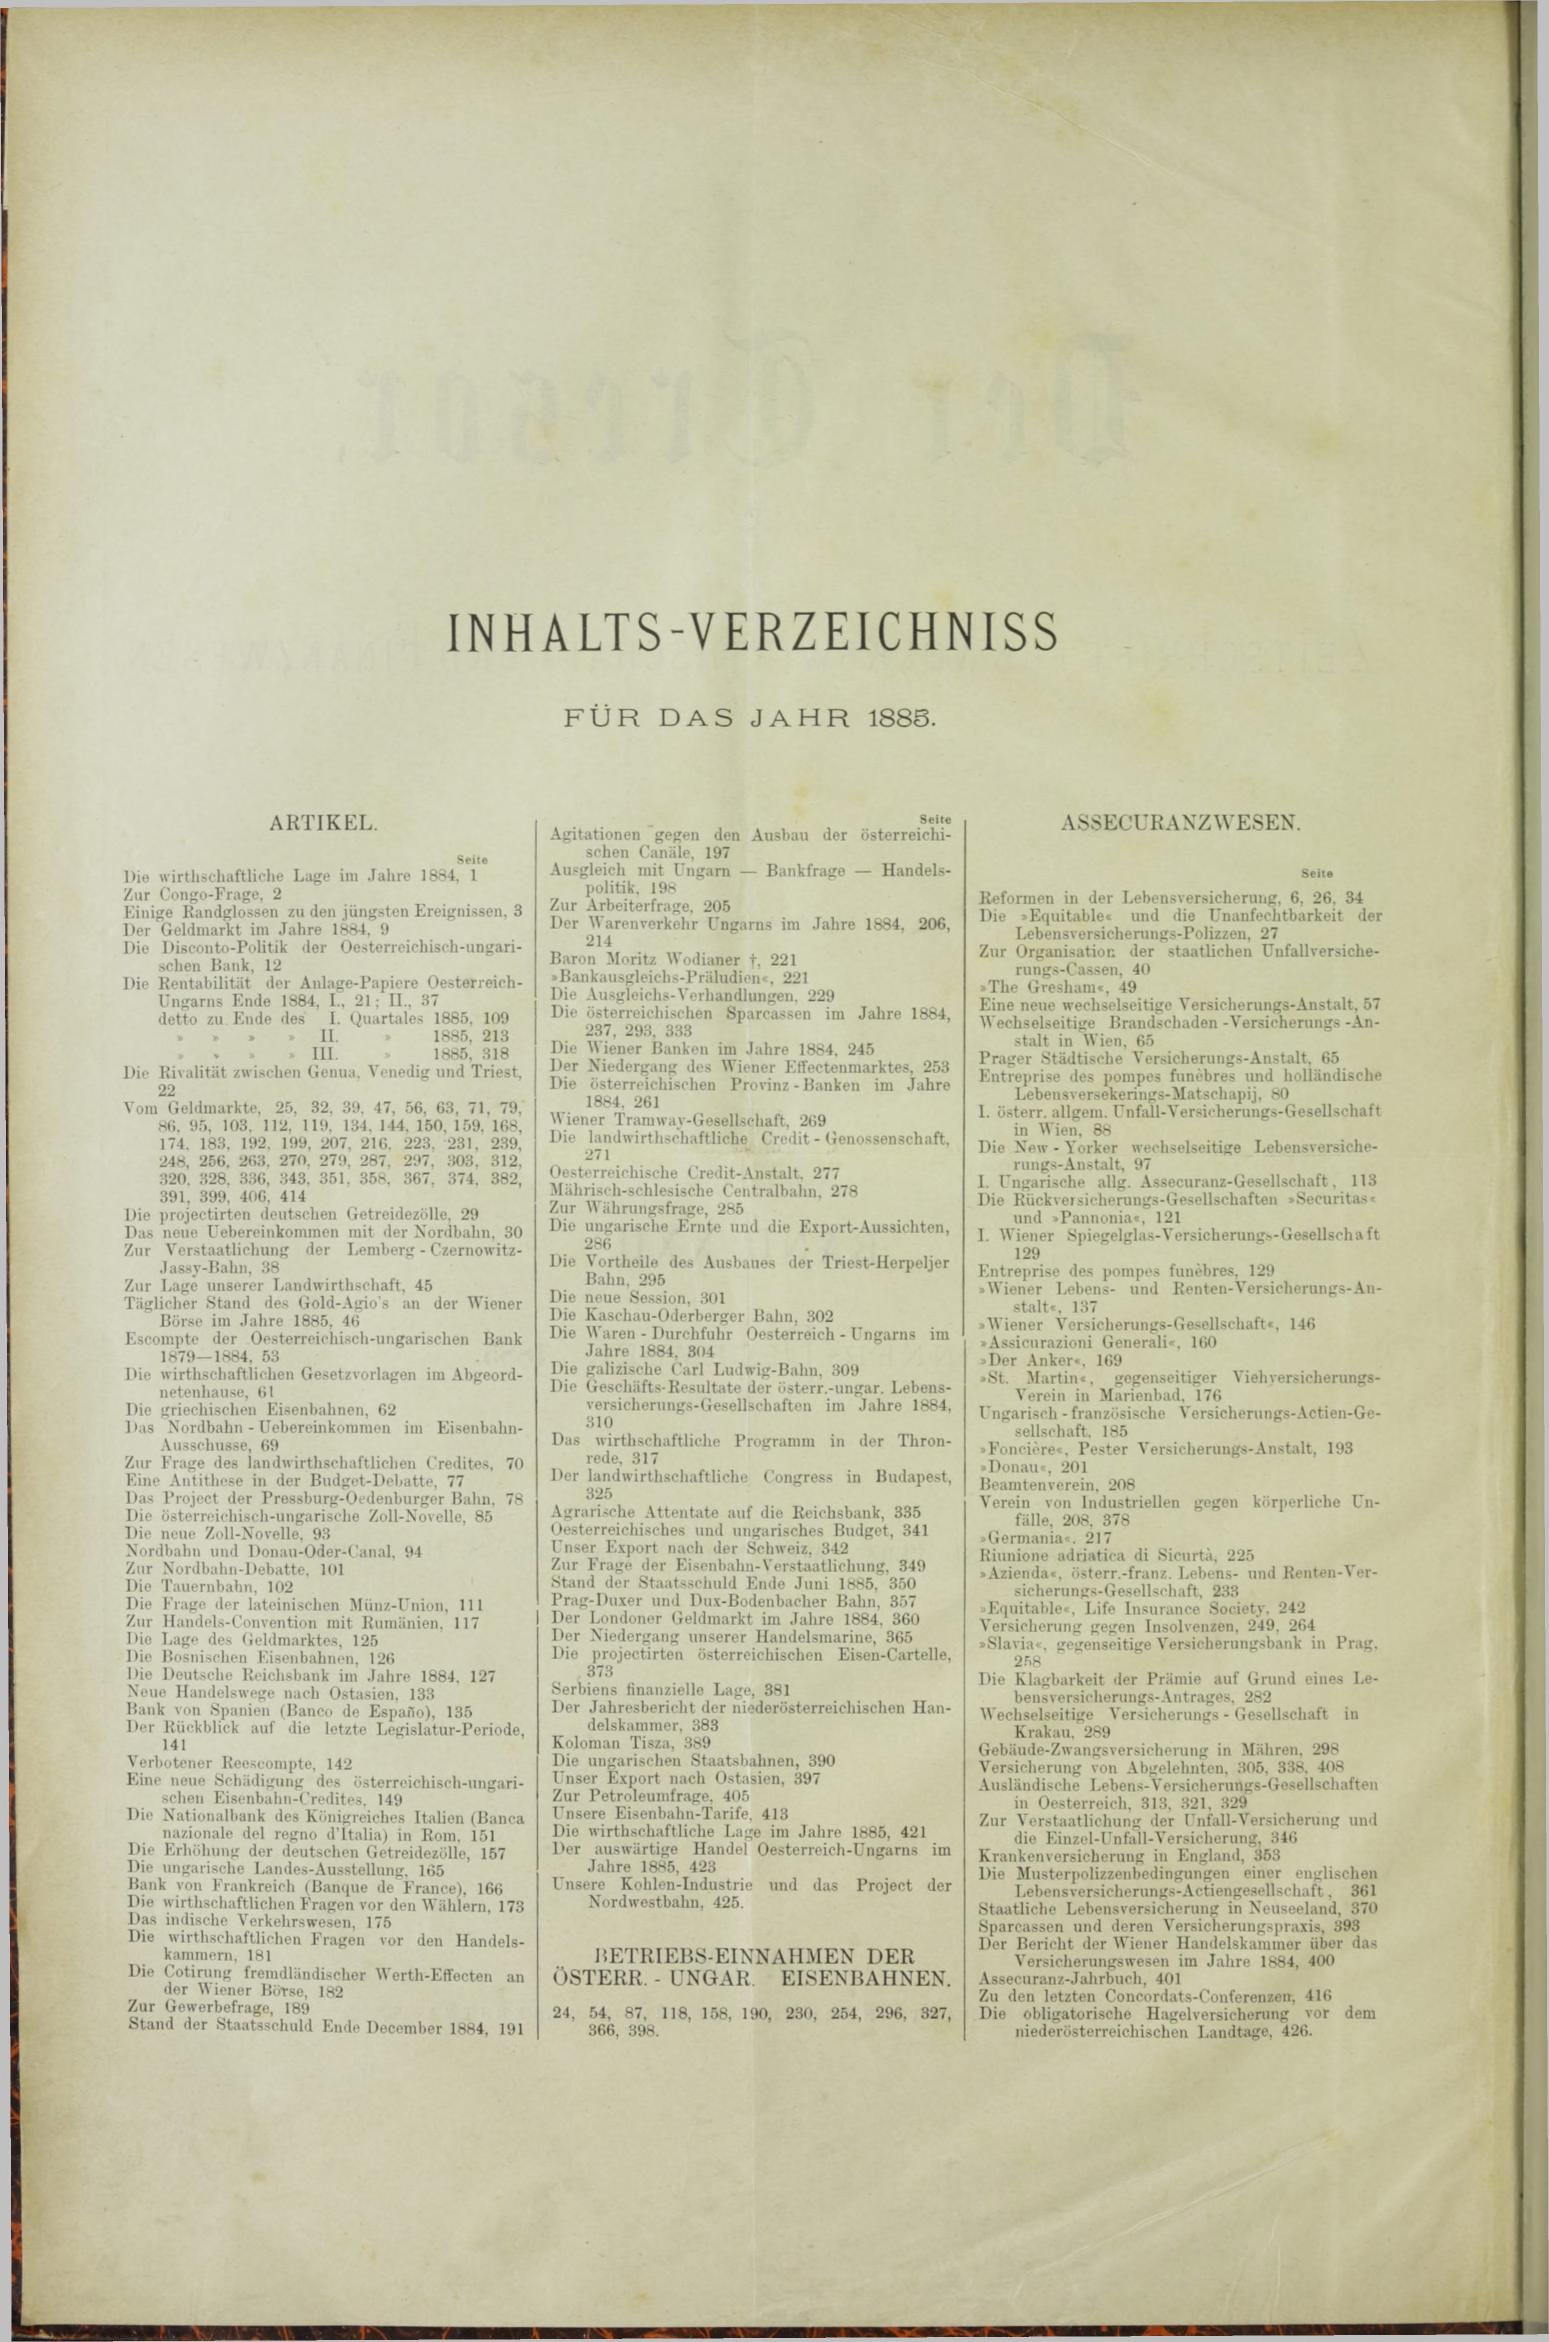 Der Tresor 30.04.1885 - Seite 10